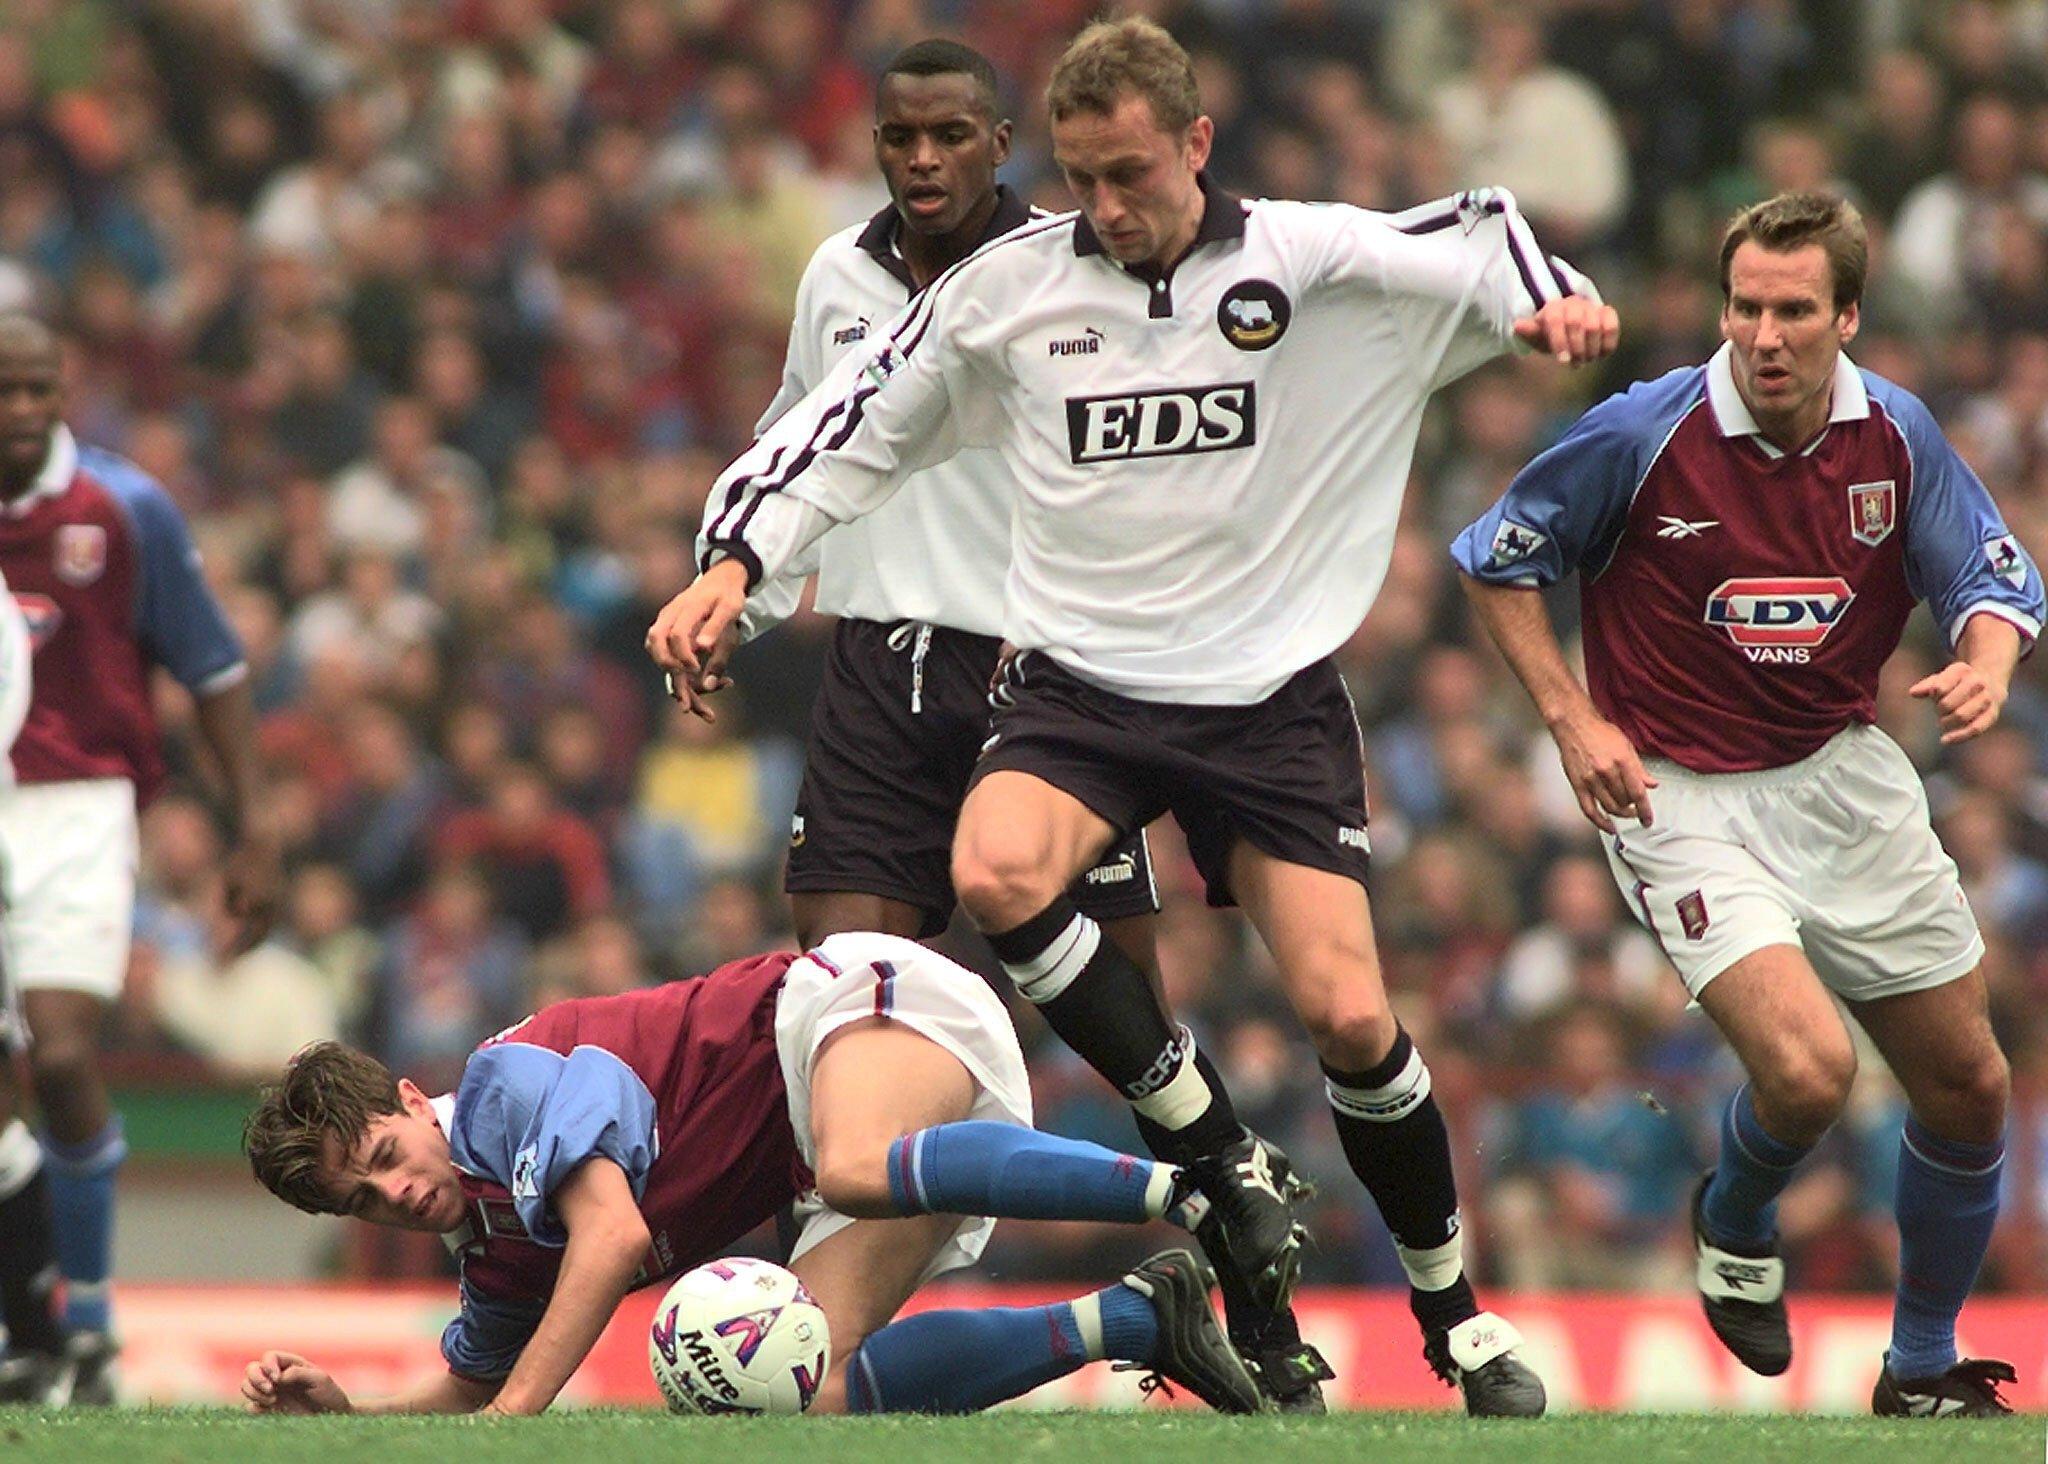 DERBY-HELT: Lars Bohinen spilte tre sesonger for Derby. Her i kamp mot Aston Villa i 1998. Til venstre Lee Hendrie, til høyre Paul Merson.